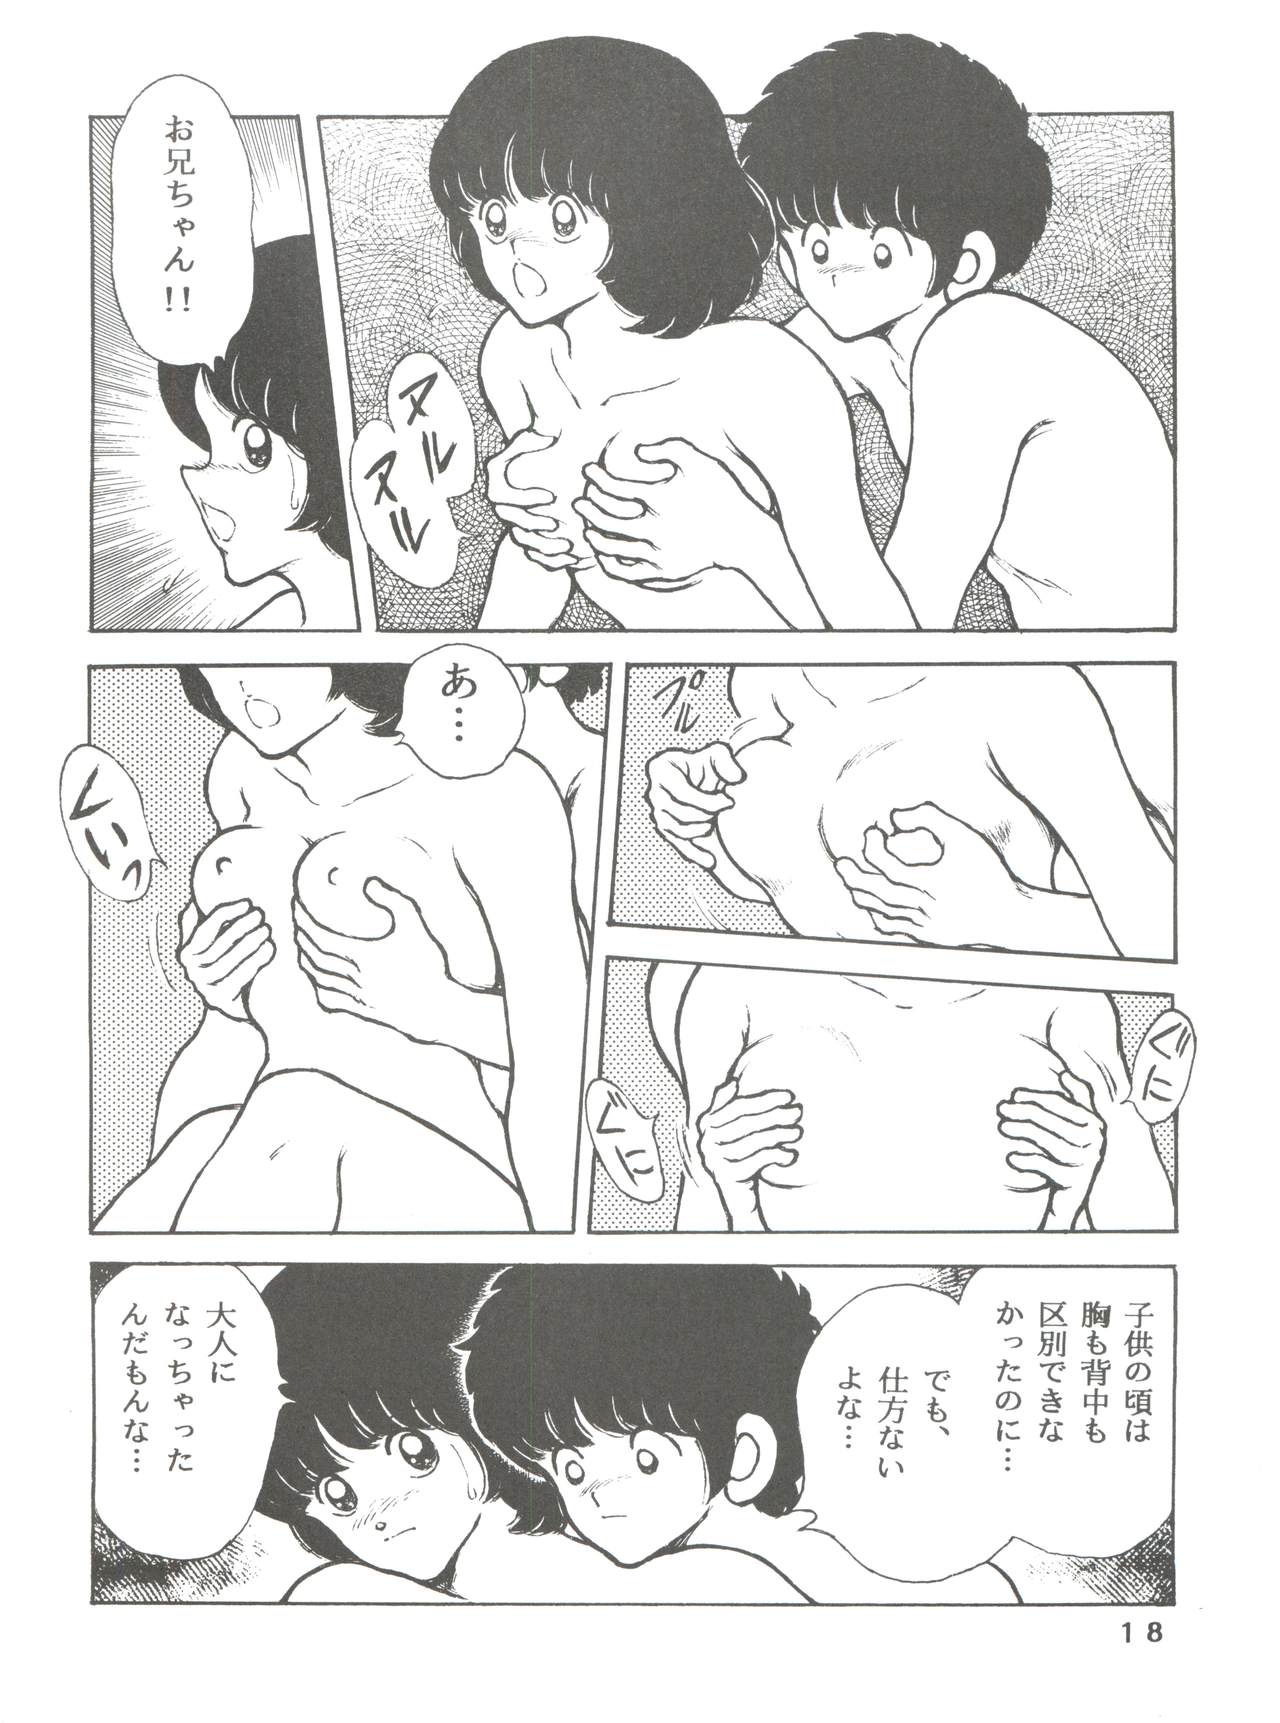 [STUDIO SHARAKU (Sharaku Seiya)] Kanshoku -TOUCH- vol.5 (Miyuki) [2000-08-13] page 18 full